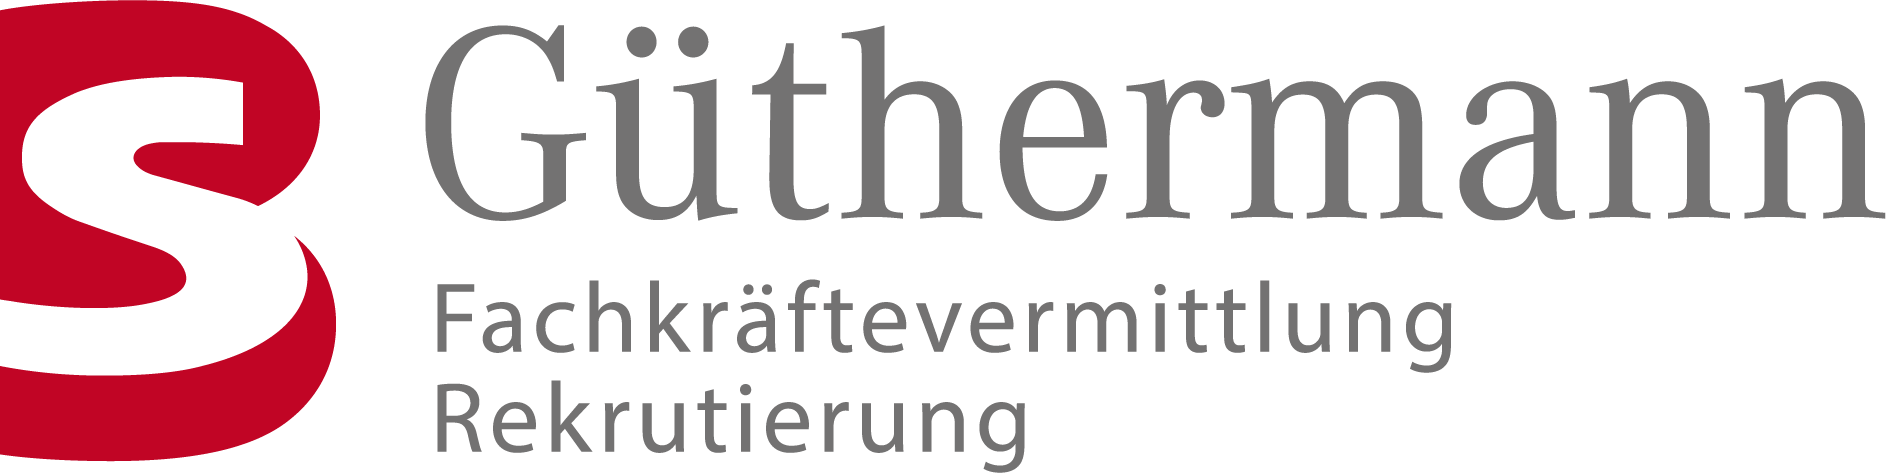 BS Güthermann GmbH Logo